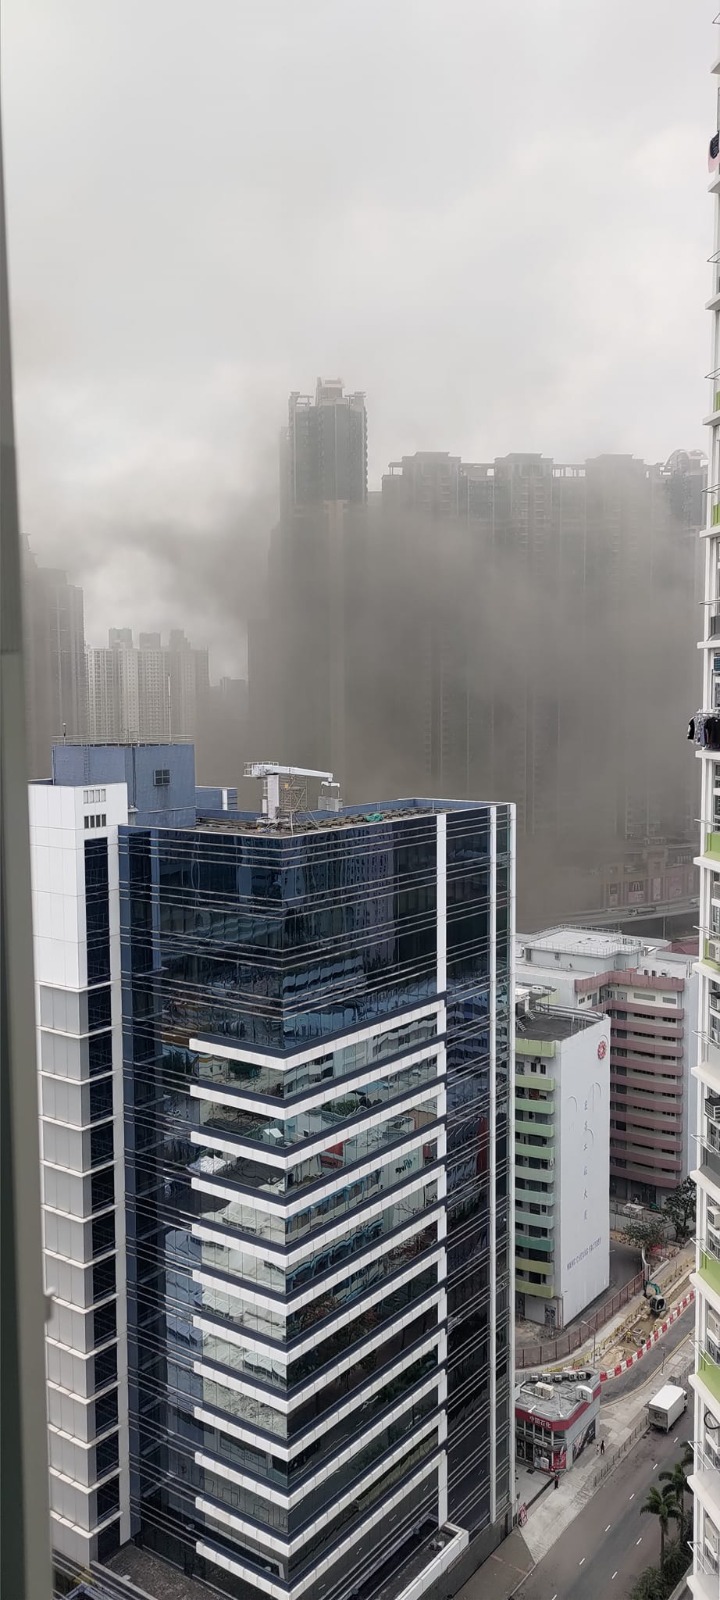 遠處的屋苑居民亦能望到西九龍天空籠罩住煙霧。網上圖片